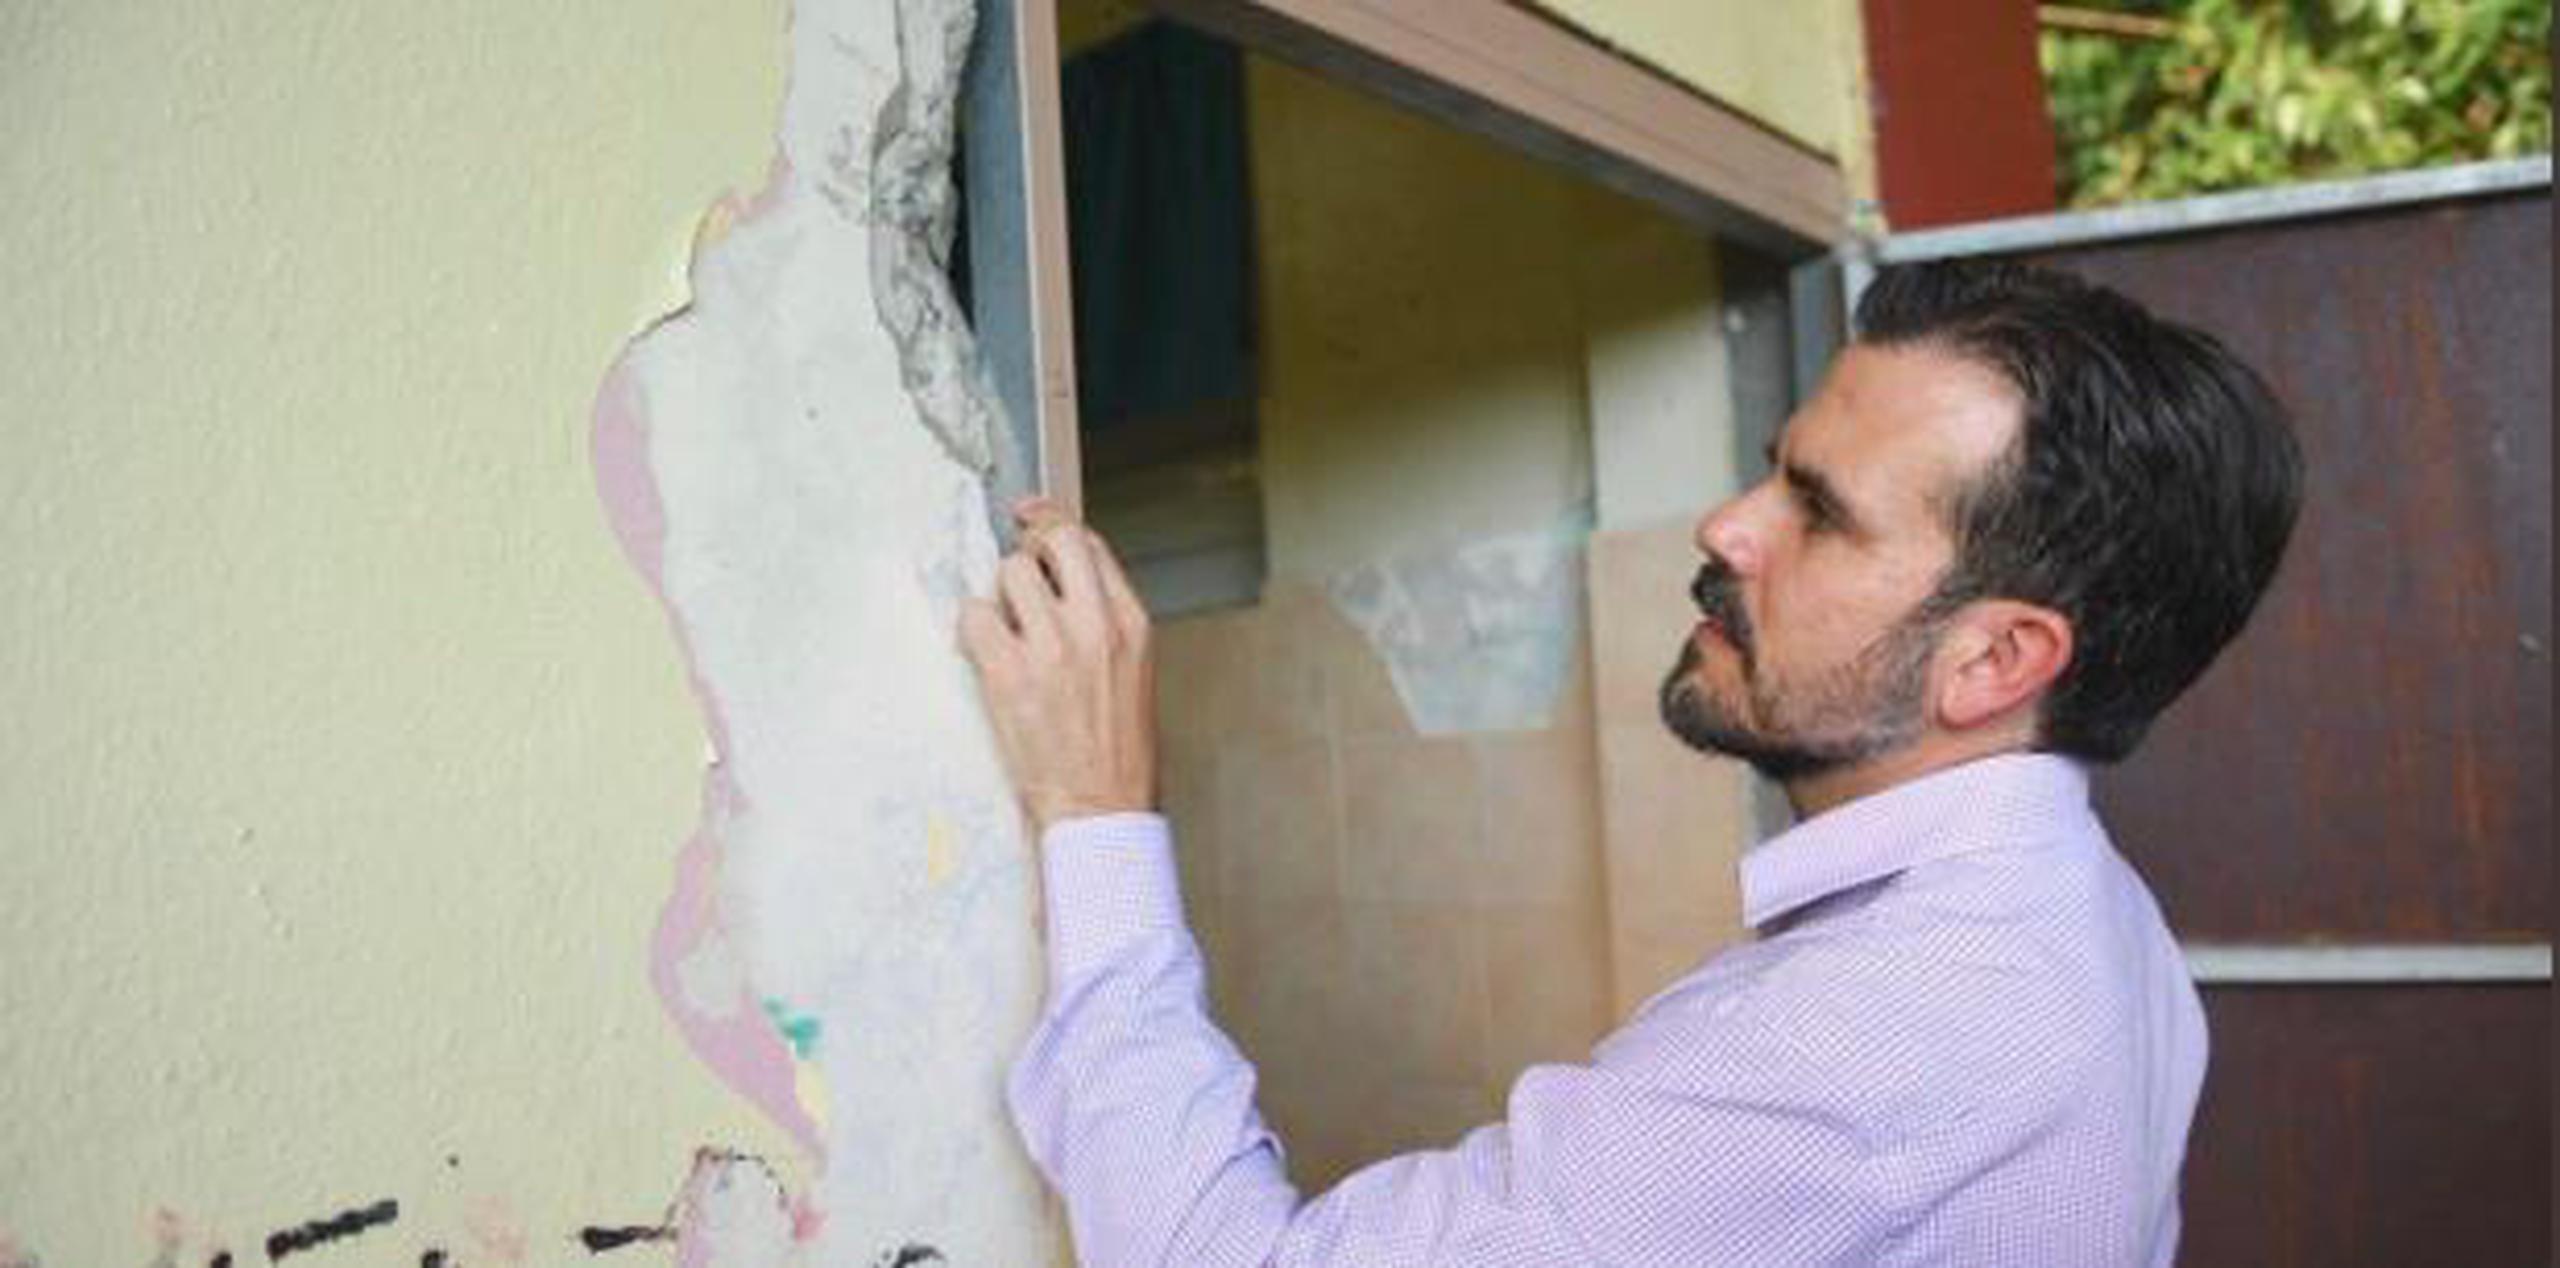 El gobernador Ricardo Rosselló aprovechó su visita ayer a Guayama para inspeccionar la escuela Juan Alemañy Silva, una de las afectadas por el movimiento de tierra de ayer. (Twitter)